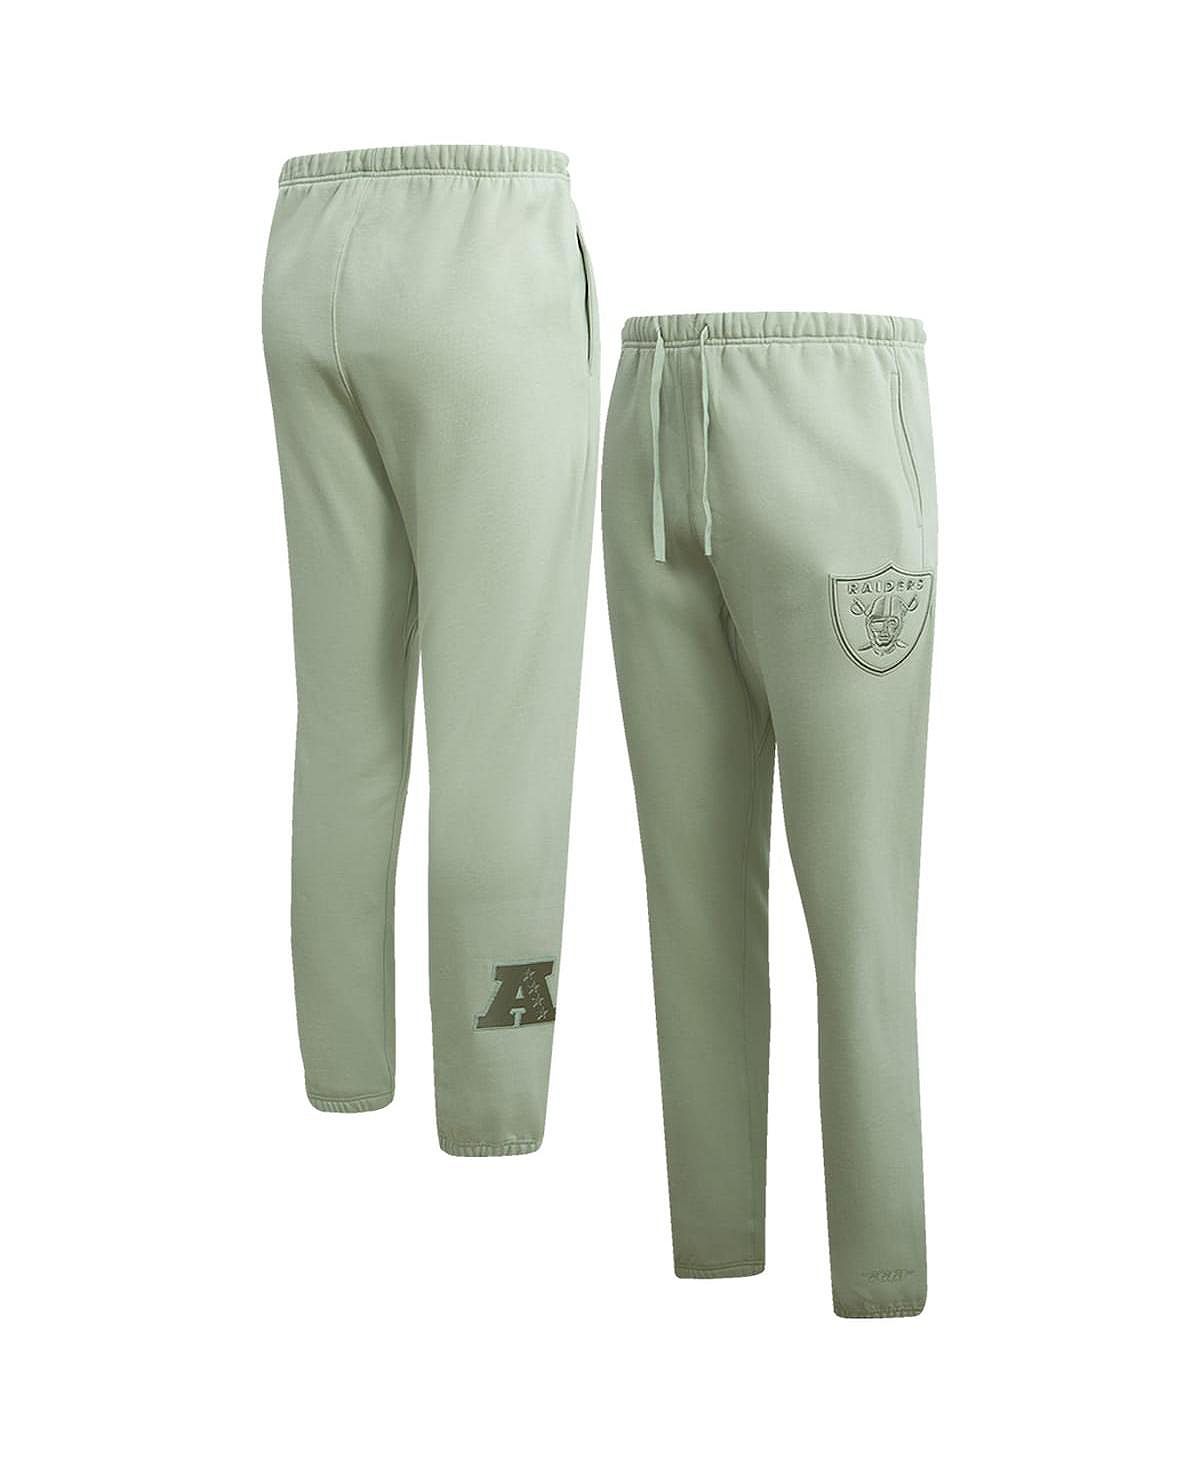 cool spots las vegas Мужские светло-зеленые флисовые спортивные штаны нейтрального цвета Las Vegas Raiders Pro Standard